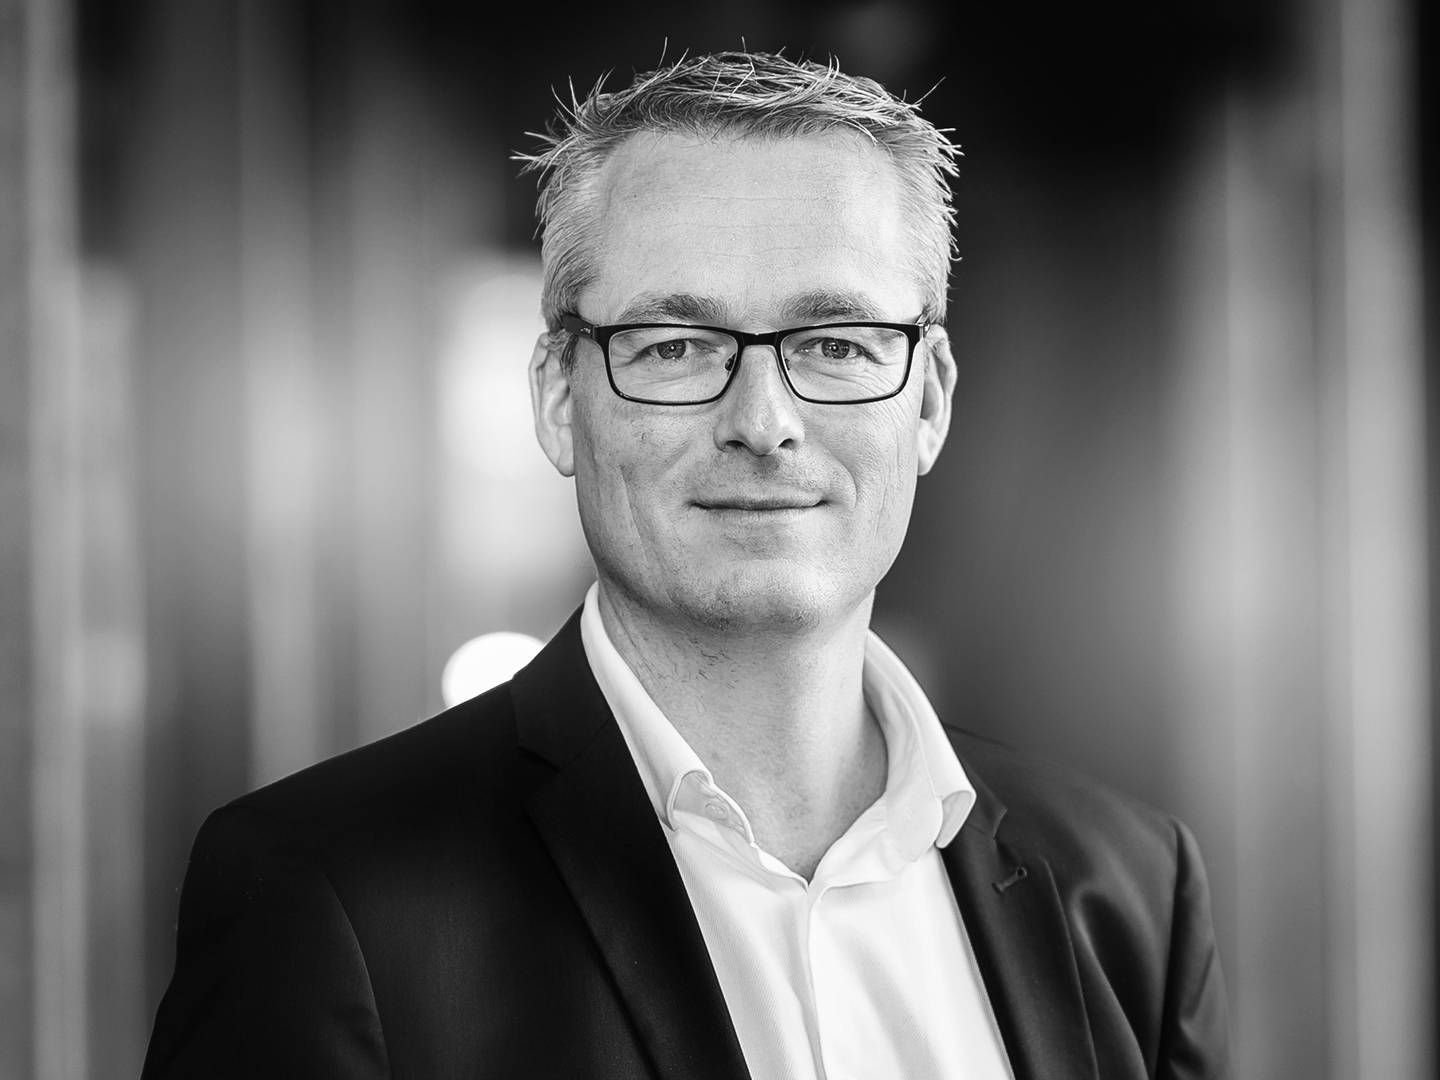 "Resultatet er meget tilfredsstillende, og udover salget af Eico har vi haft udbytter fra flere af vores virksomheder," siger Søren Mølgaard Kristensen, direktør i Vækst-Invest Nordjylland. | Foto: VækstInvest